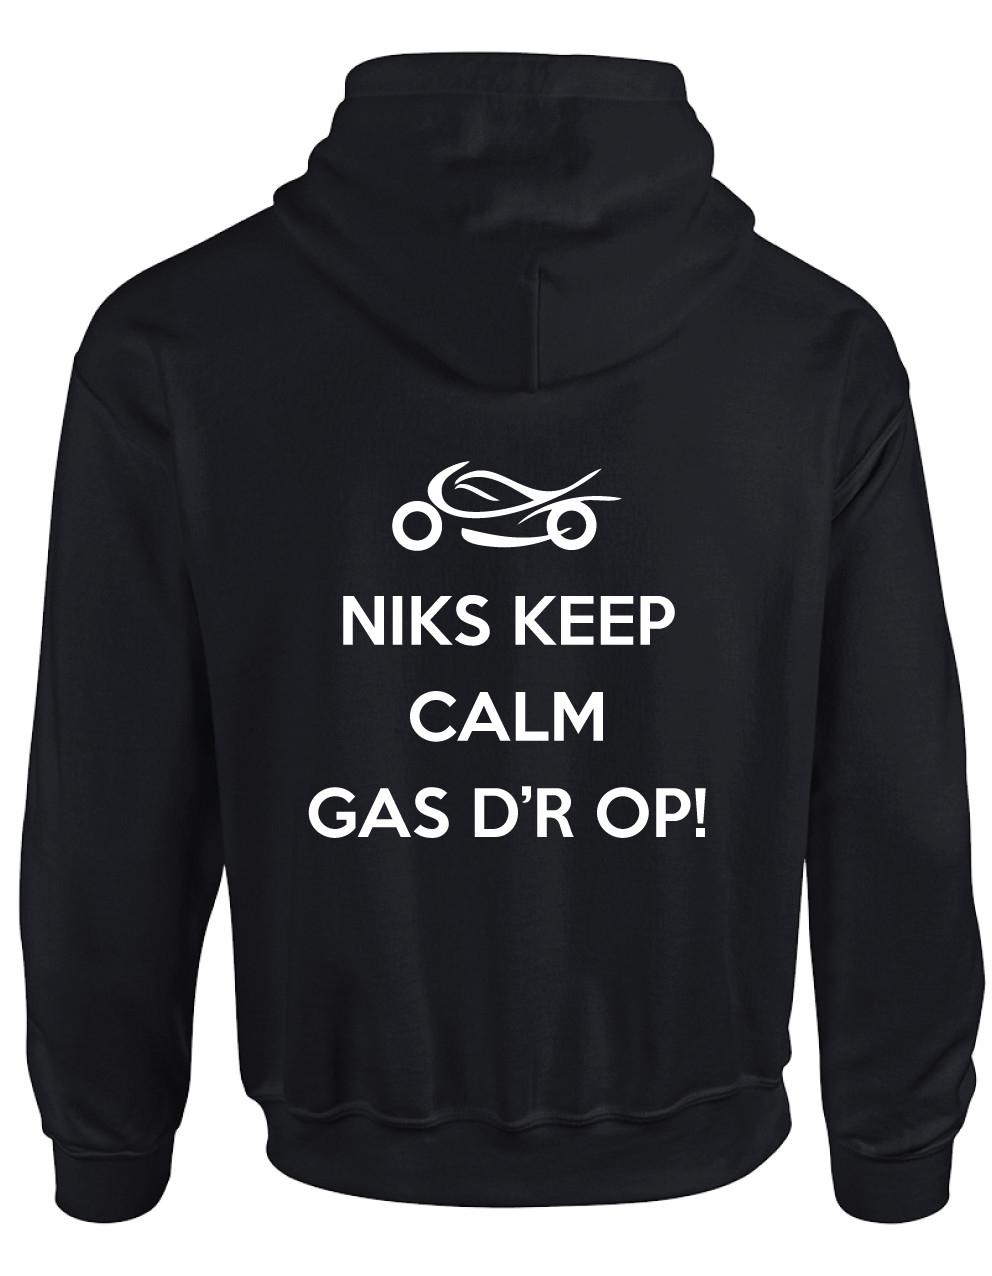 Langskomen hond Kip Motor sweater met hoodie incl tekst niks keep calm gas erop - mowena